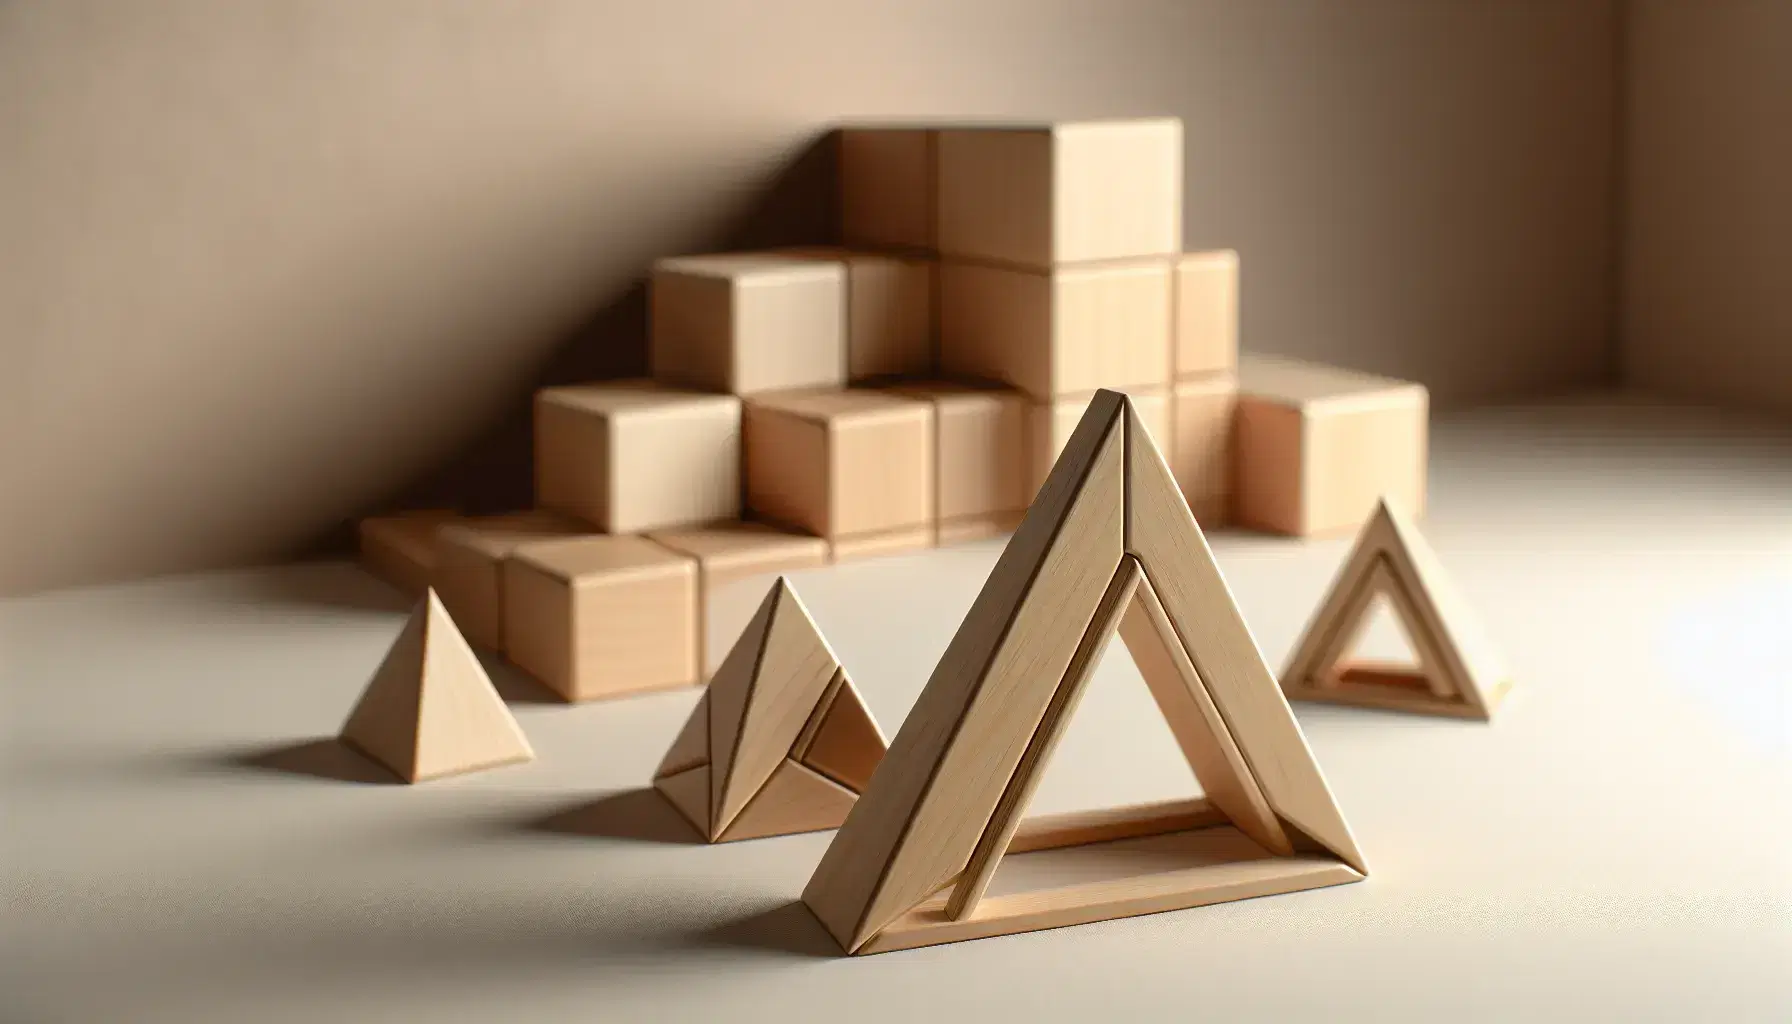 Conjunto de figuras geométricas de madera en 3D con triángulos equiláteros y cubos idénticos junto a una escalera de perspectiva en superficie lisa.